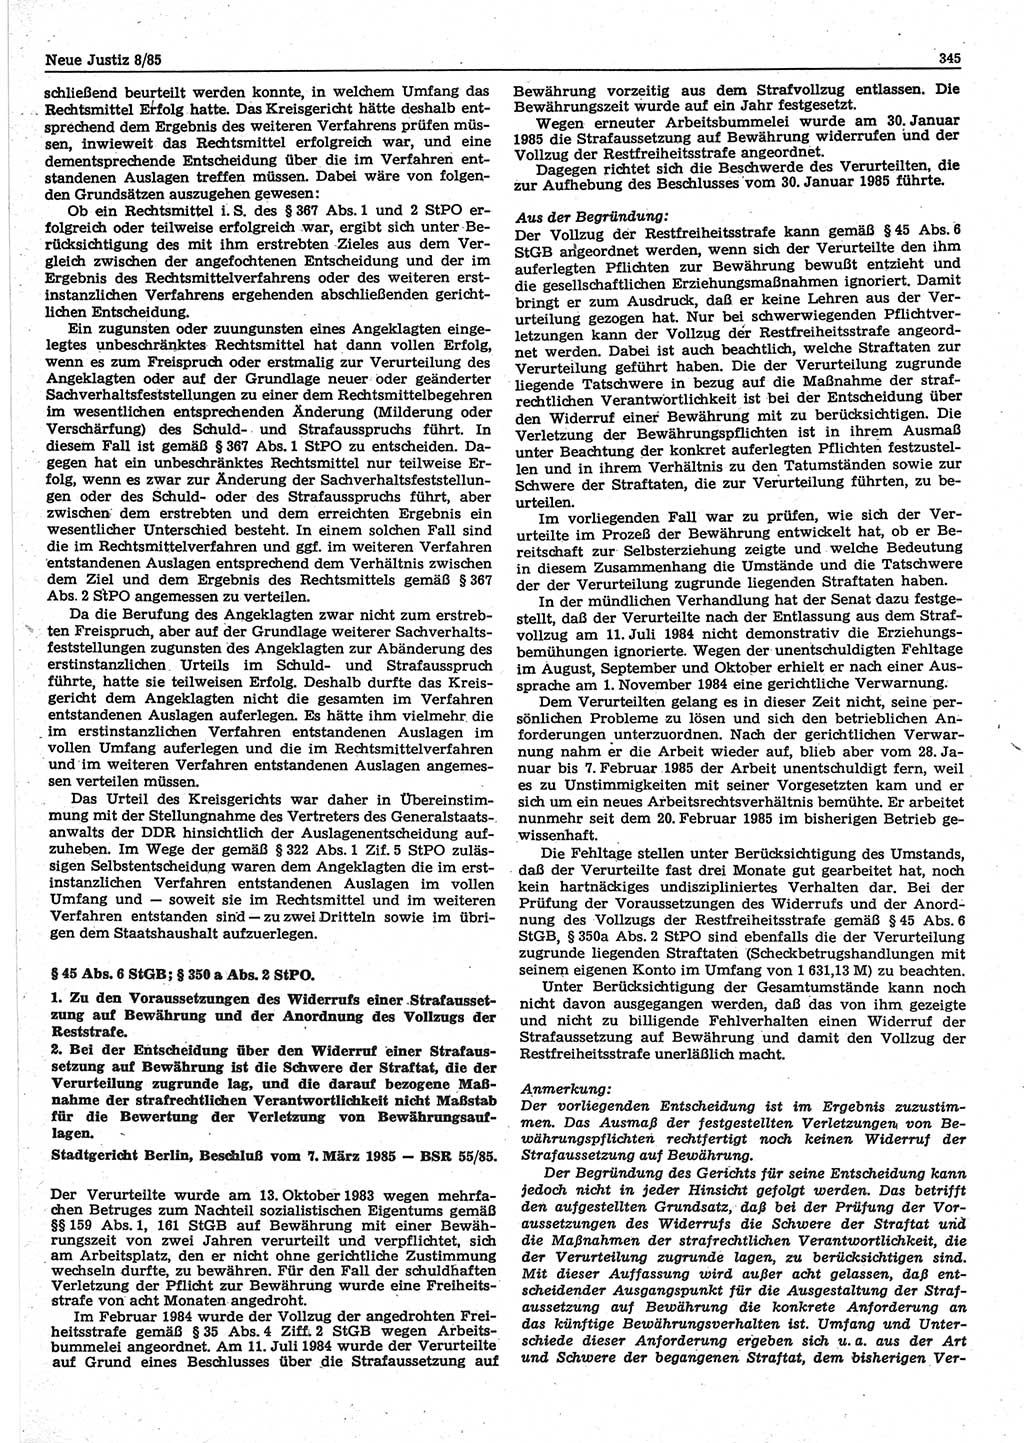 Neue Justiz (NJ), Zeitschrift für sozialistisches Recht und Gesetzlichkeit [Deutsche Demokratische Republik (DDR)], 39. Jahrgang 1985, Seite 345 (NJ DDR 1985, S. 345)